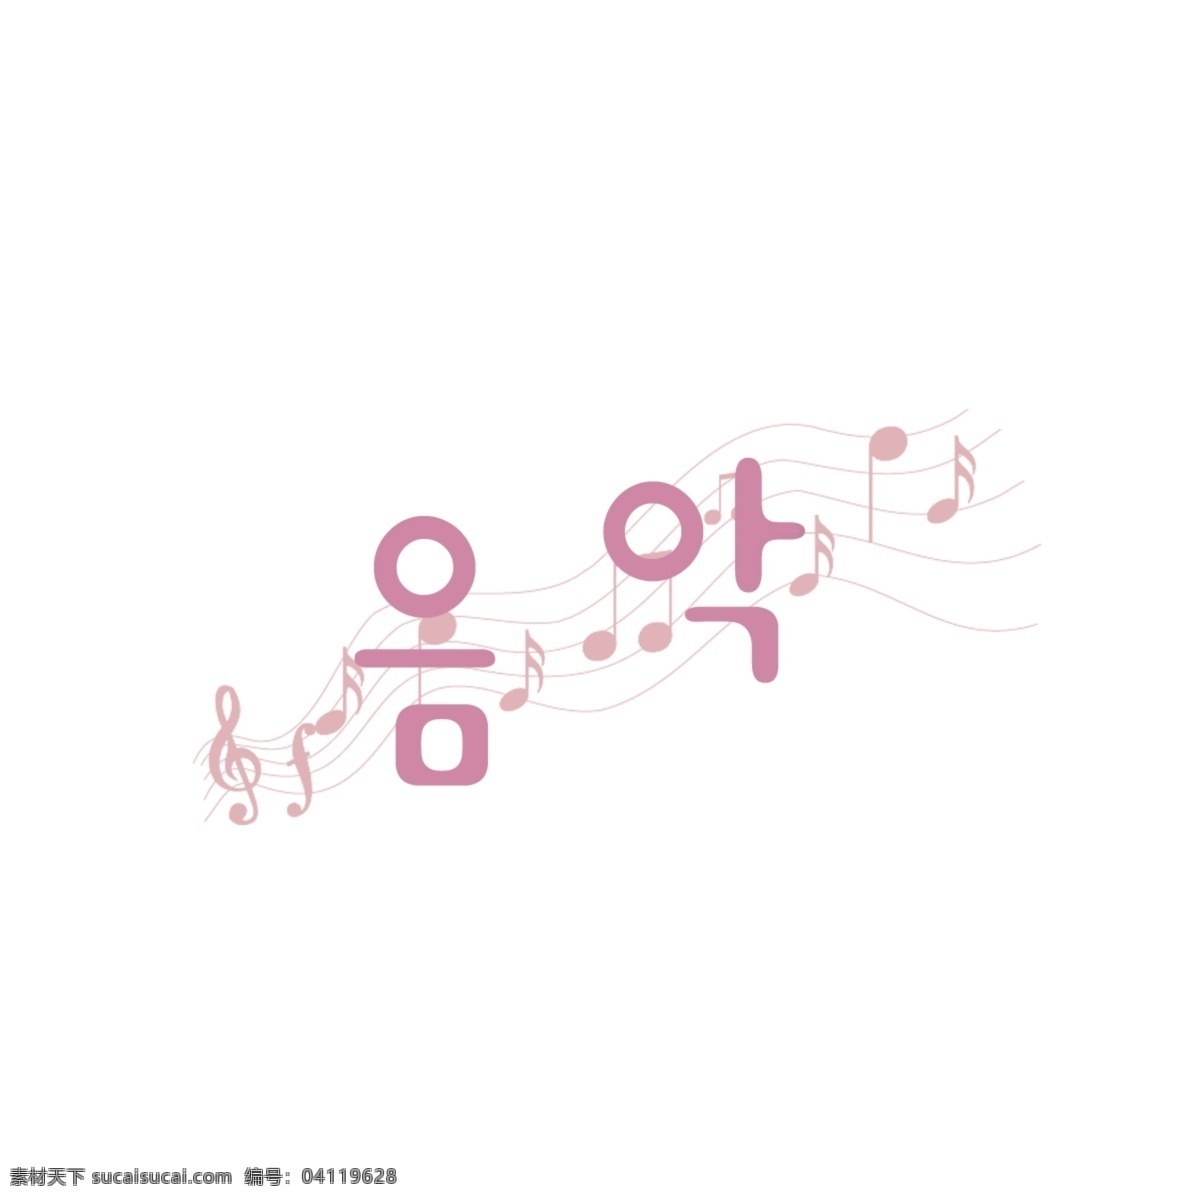 韩城市 背景音乐 韩国字体 音乐 用于手机 背景 图标 商标 coreldraw 中 油纸 墙纸 仙女 谢和 分子 简单